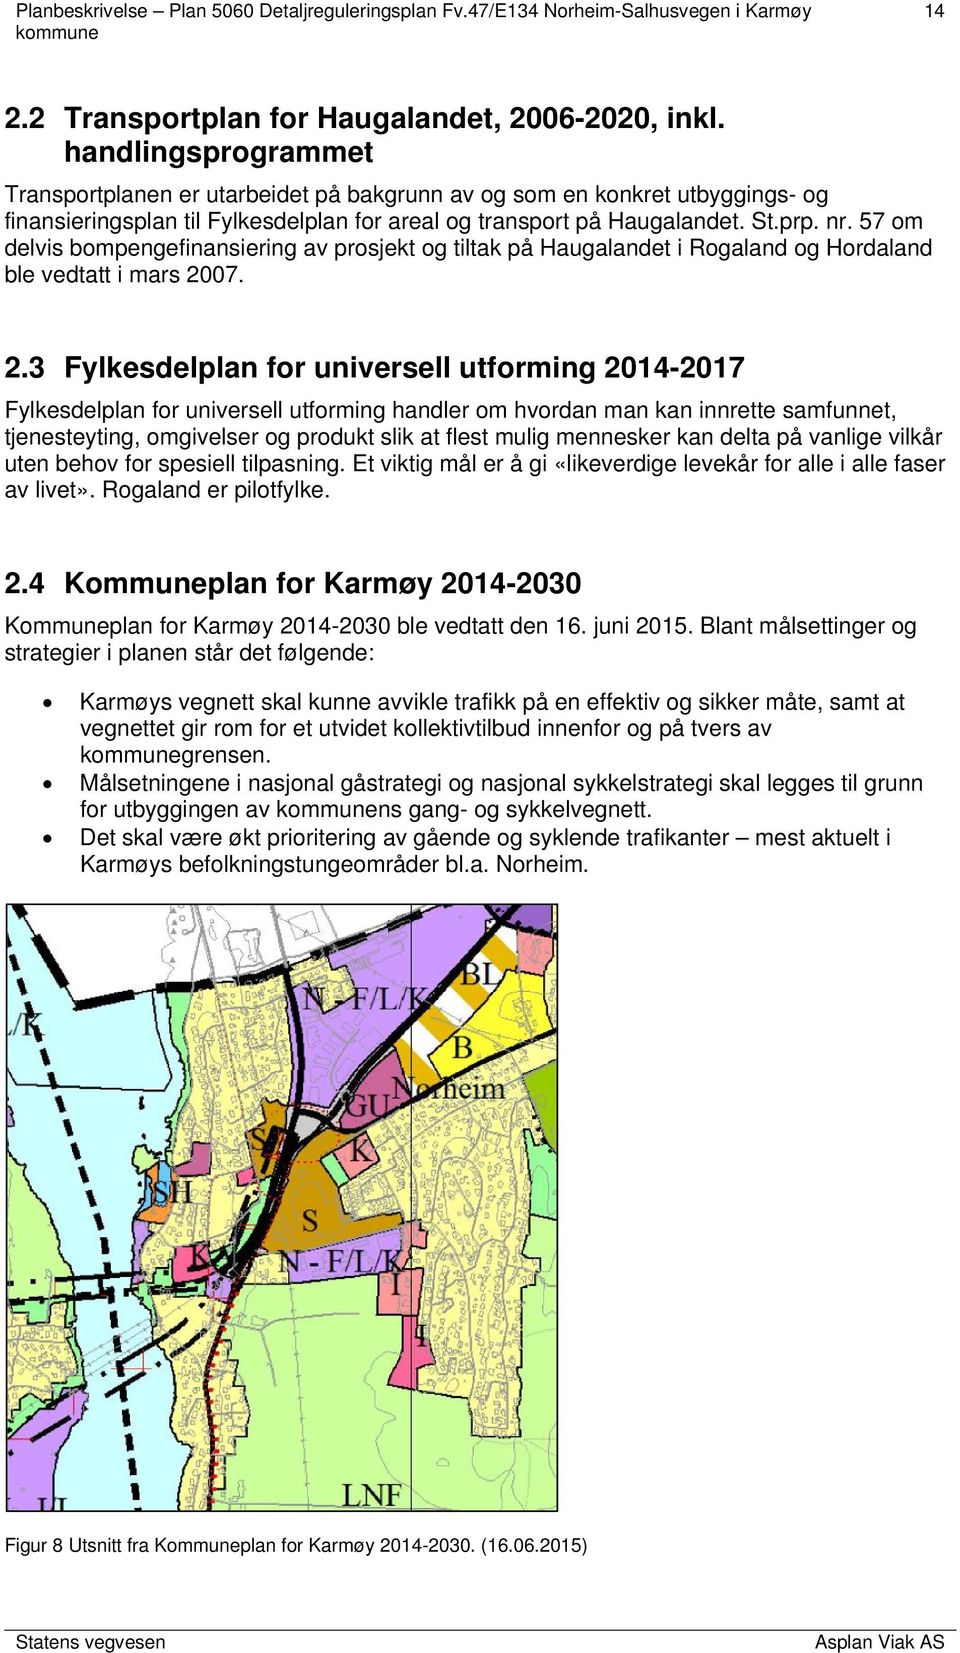 57 om delvis bompengefinansiering av prosjekt og tiltak på Haugalandet i Rogaland og Hordaland ble vedtatt i mars 20